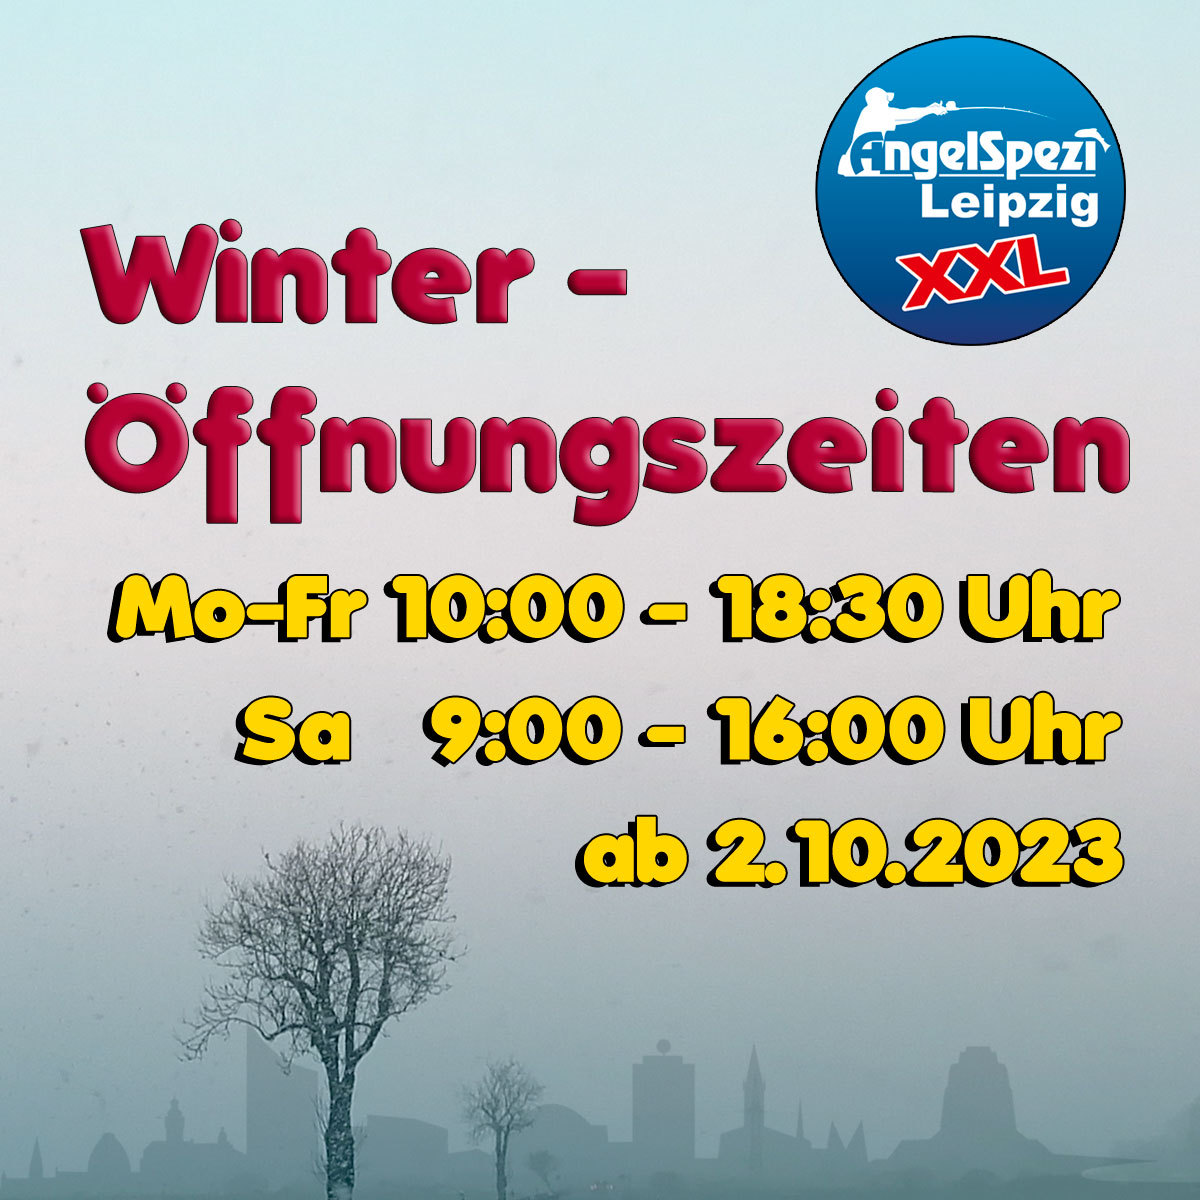 Winteröffnungszeiten im Spezi Leipzig ab 2.10.2023